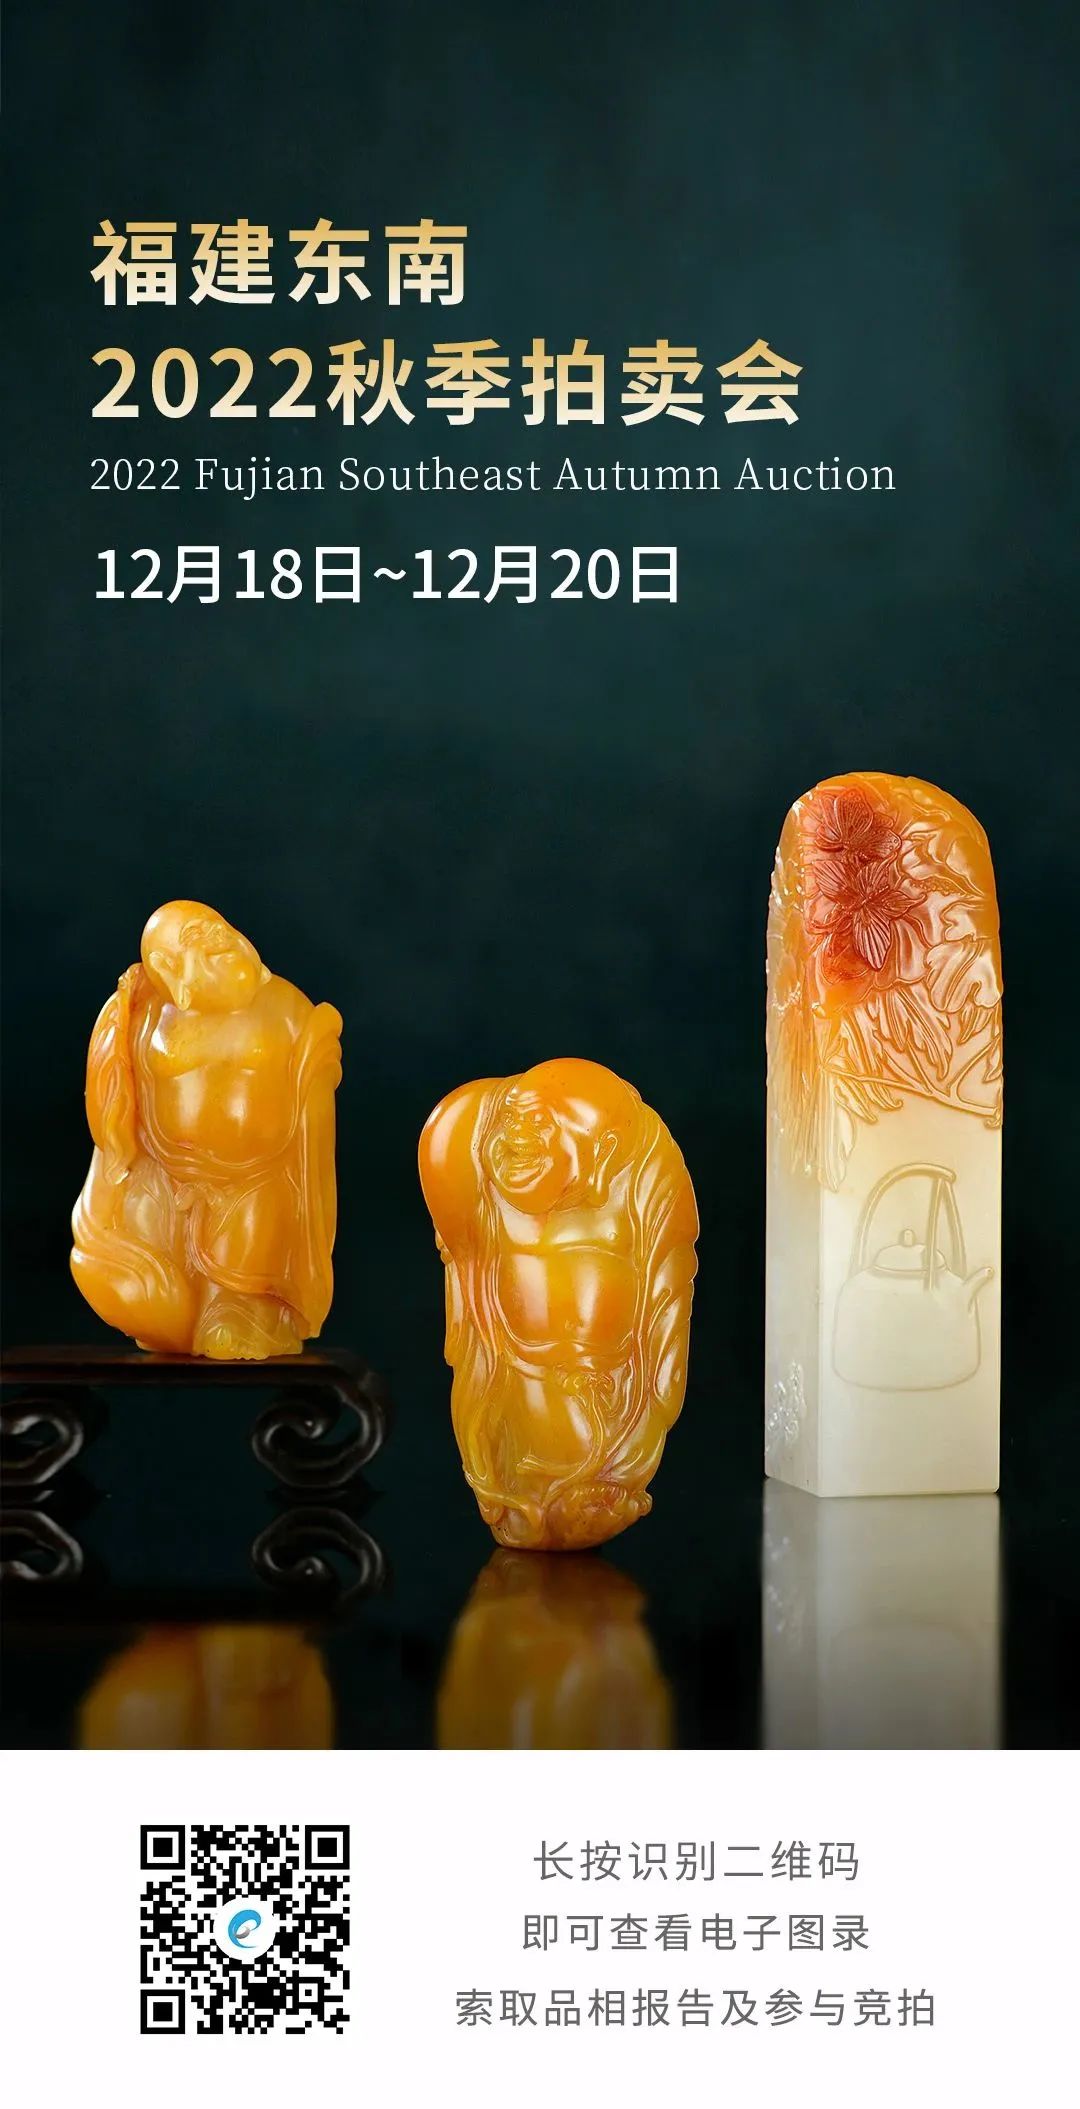 典藏级寿山石雕珍品为主角，福建东南2022秋拍精彩呈现- 拍卖行排行榜